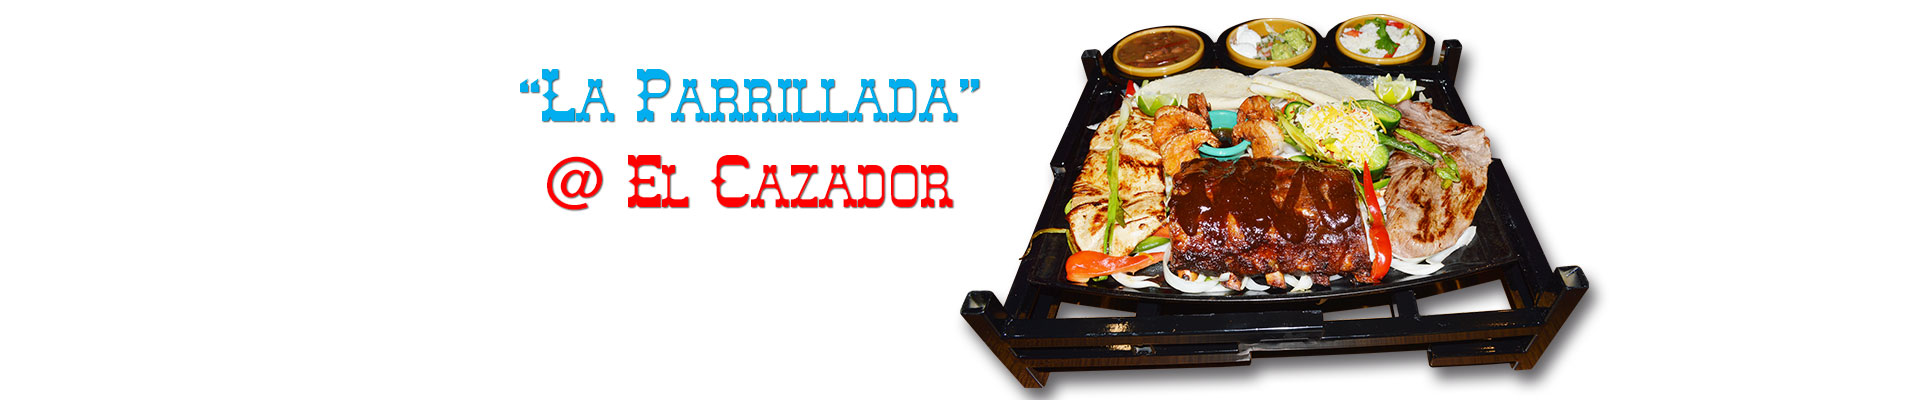 Super Parrillada @ El Cazador Restaurant